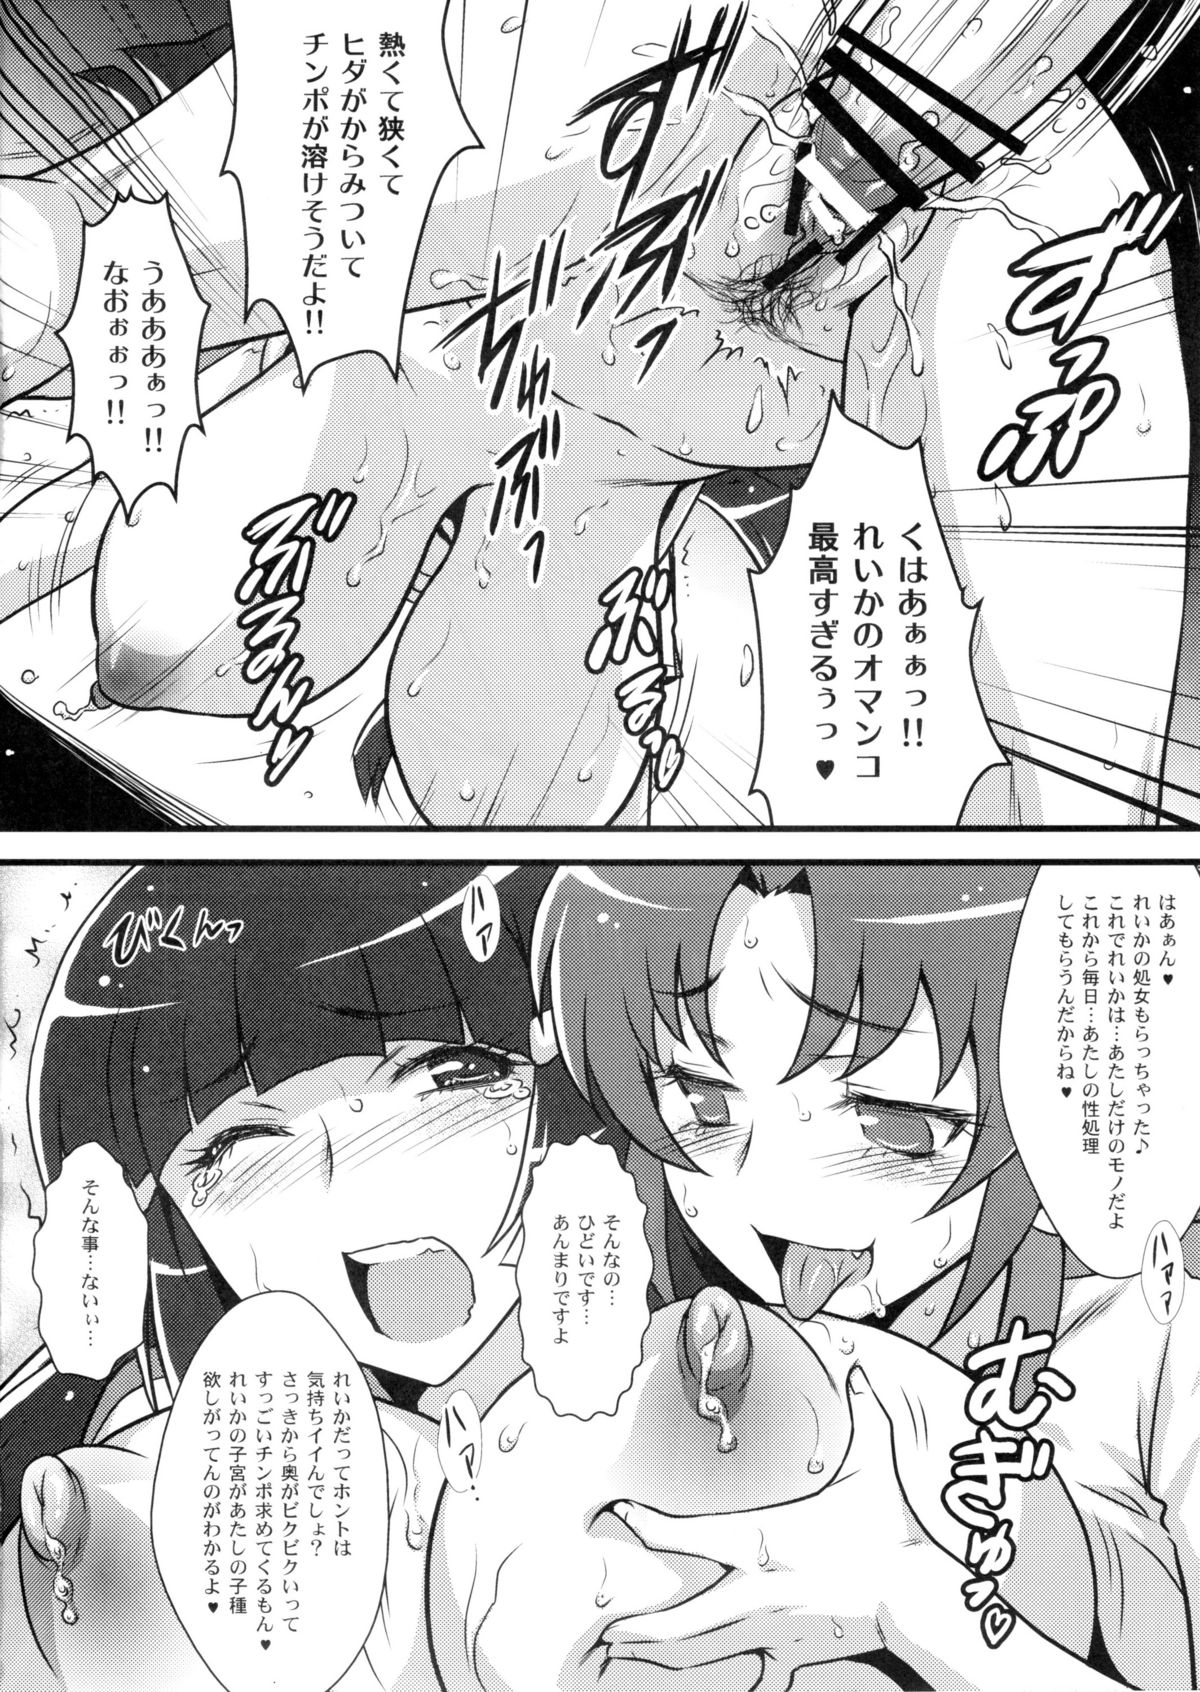 (C83) [Yorokobi no Kuni (JOY RIDE)] Yorokobi no Kuni Vol. 18 Futa Nao x Rei Kan (Smile Precure!) page 7 full